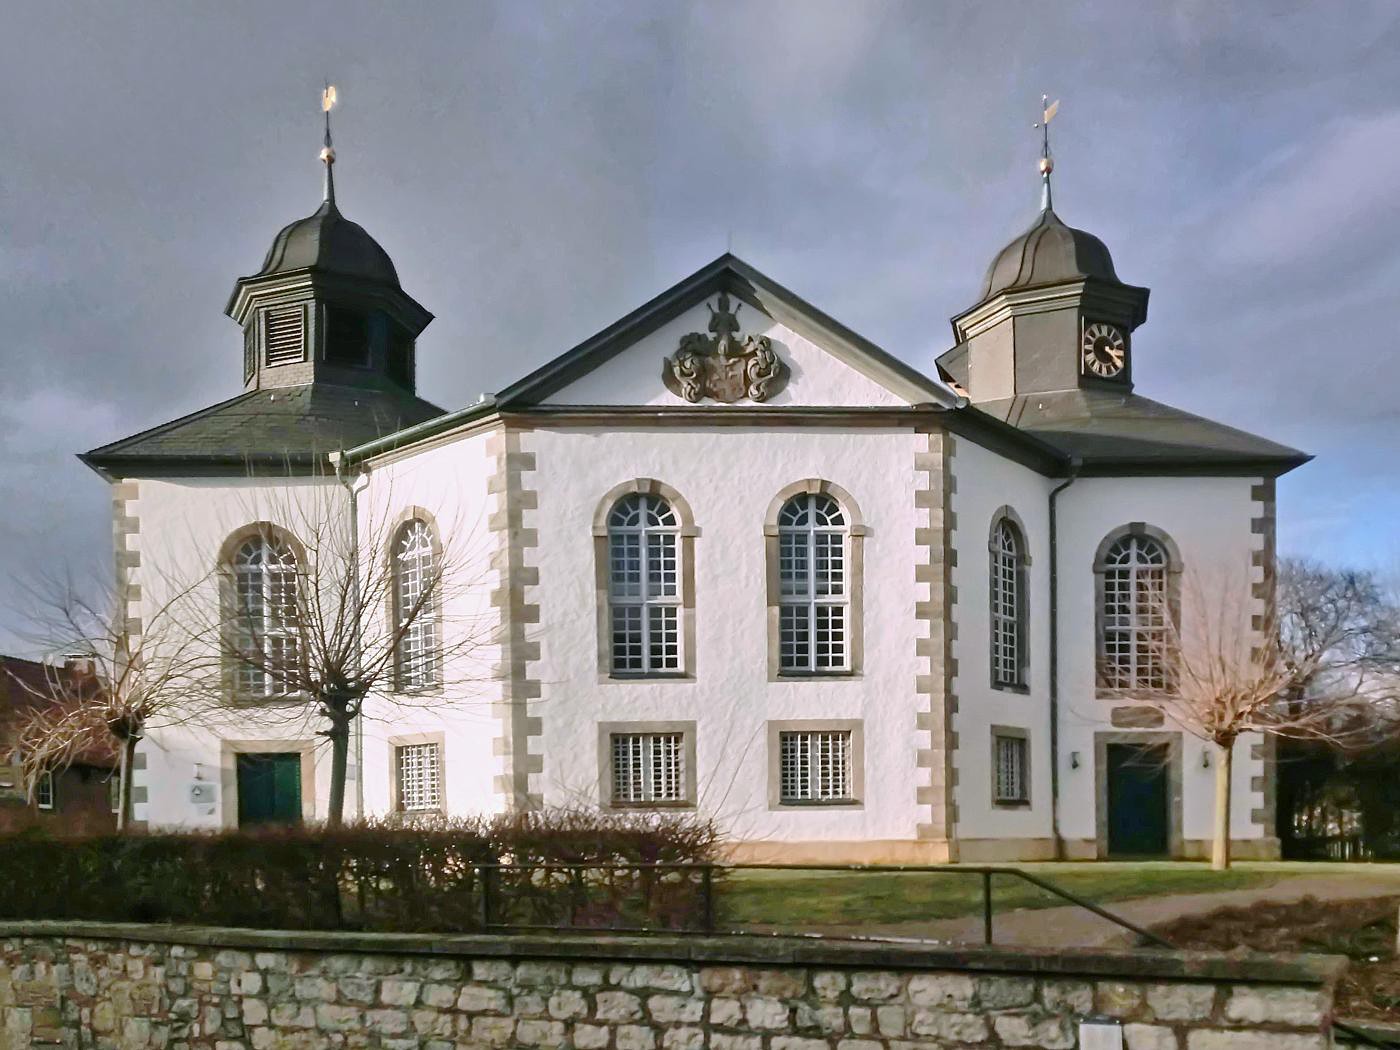 Immanuel-Kirche in Hehlen